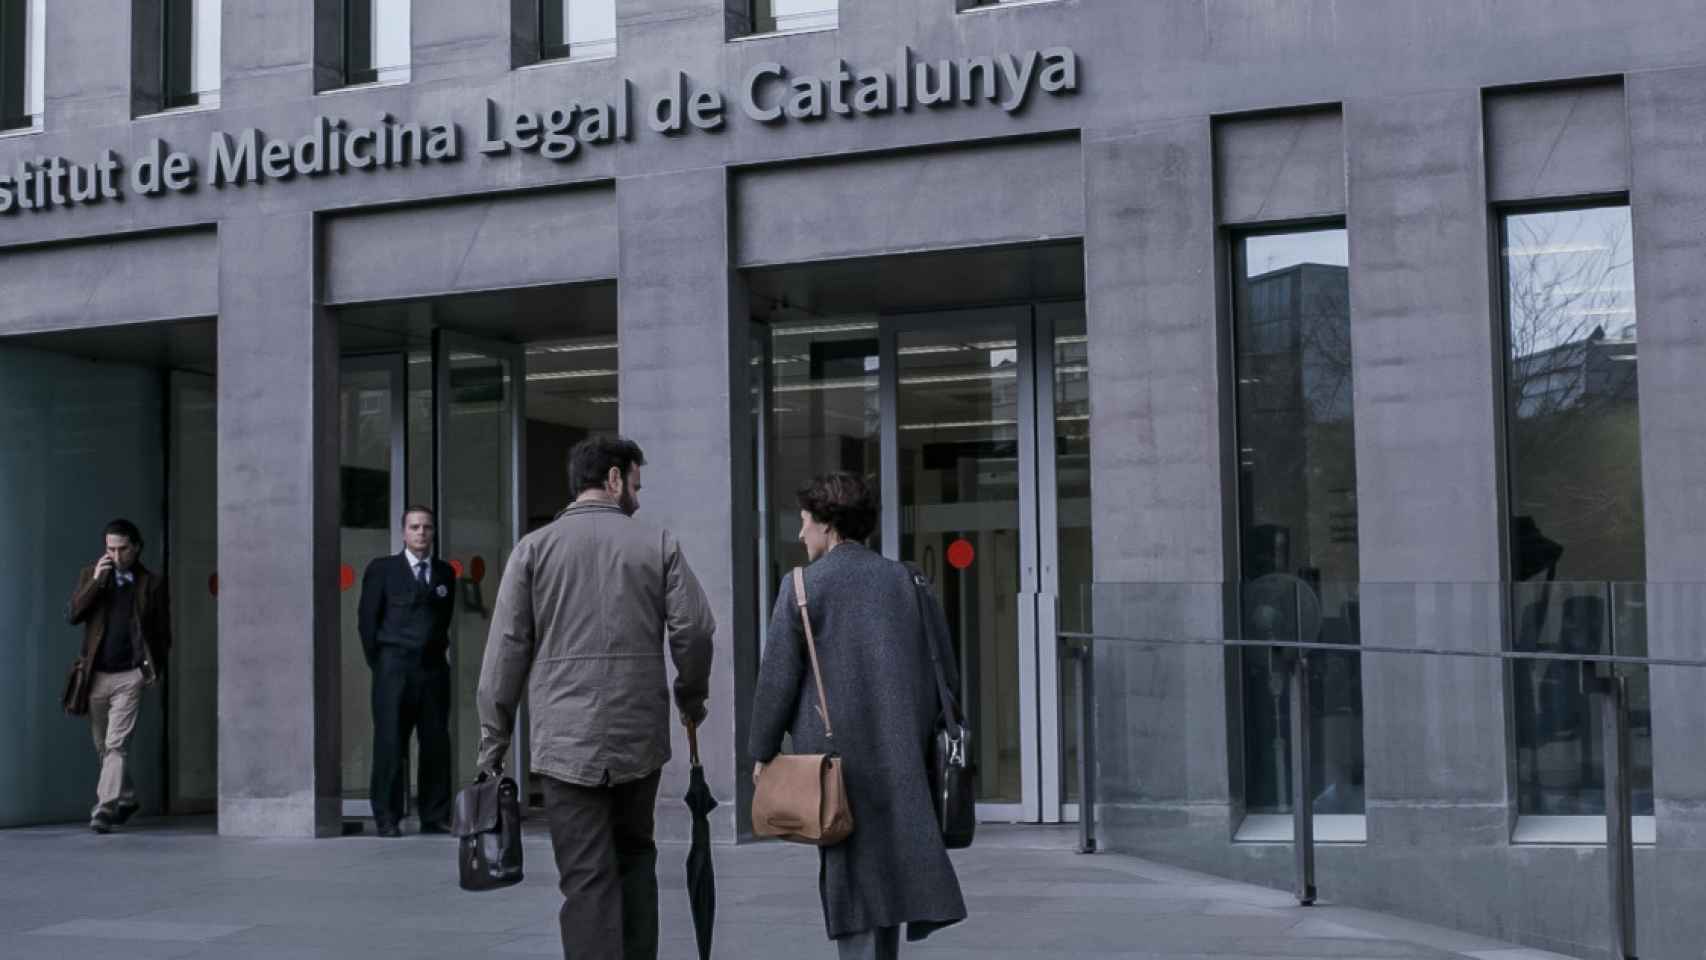 En el Instituto de Medicina Legal de Cataluña se desarrollaron las tareas de identificación de los cuerpos tras los atentados